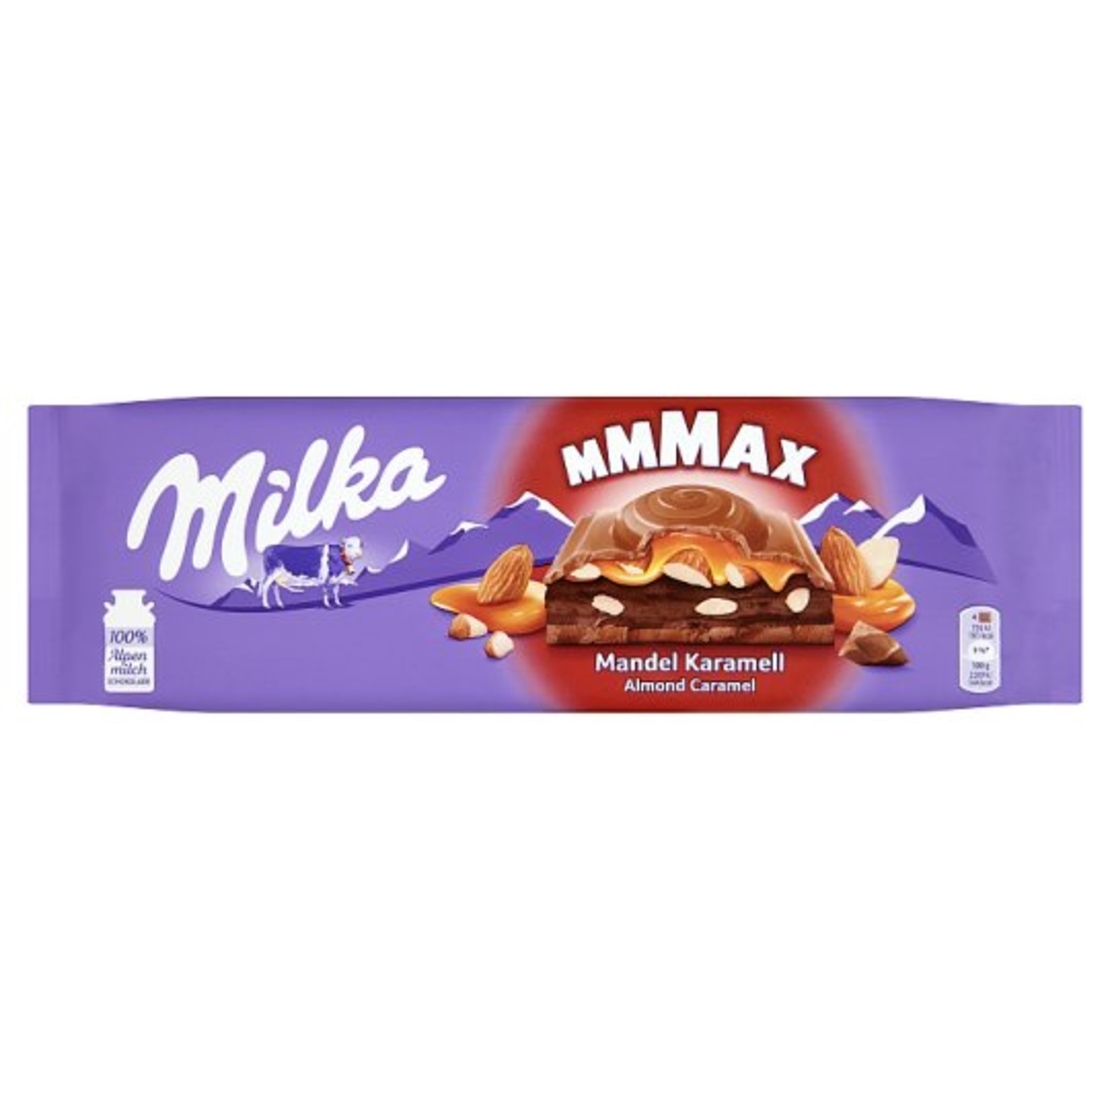 Milka - Mmmax - Almond Caramel